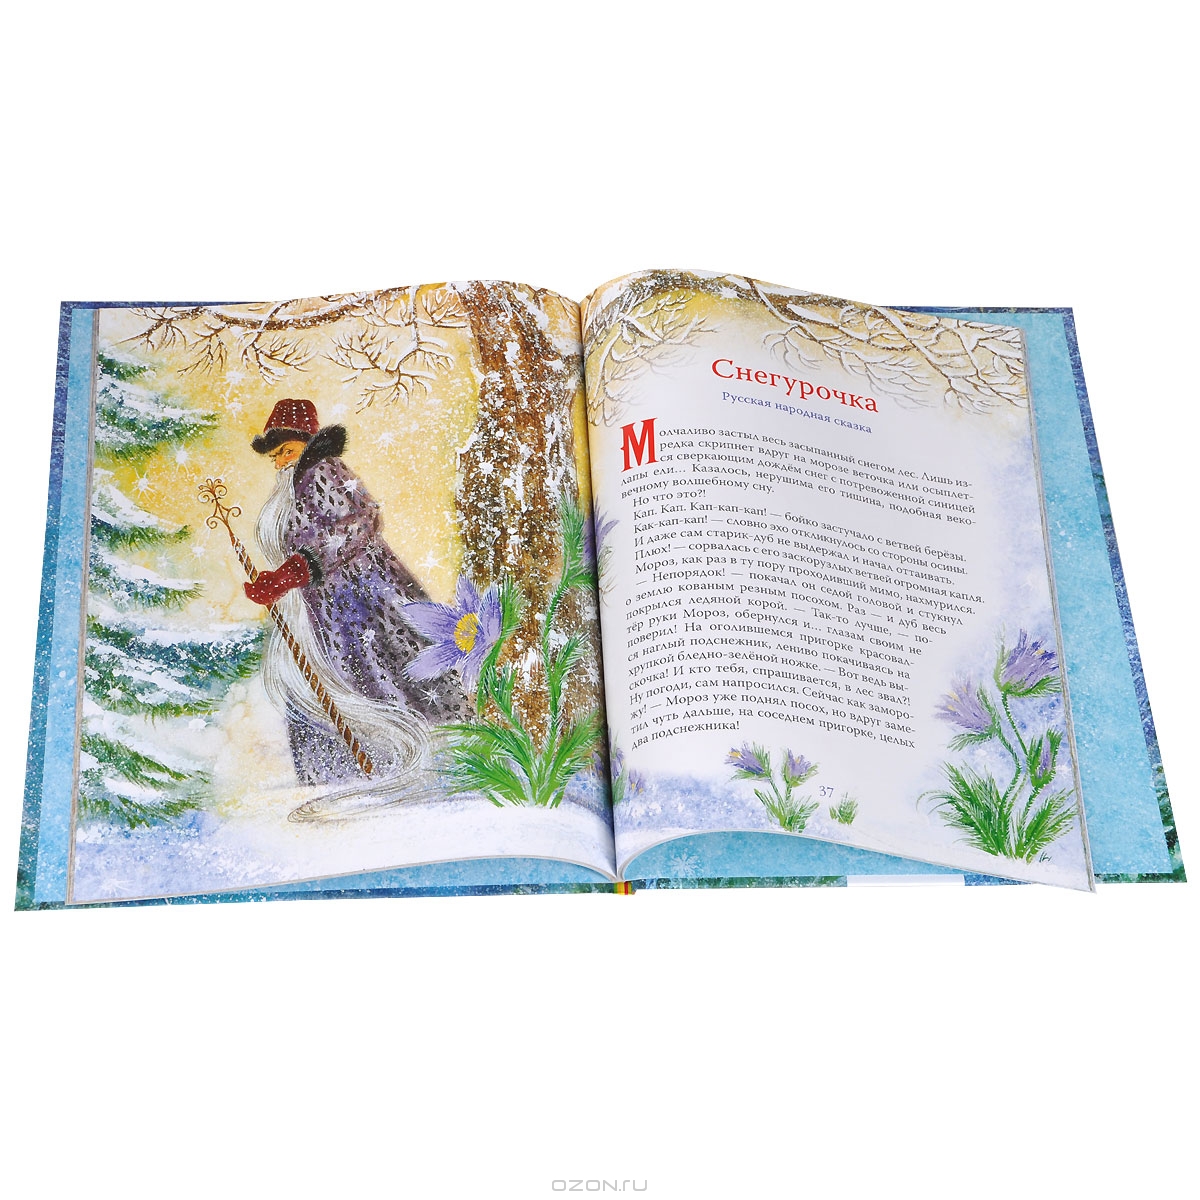 Сказка зима читать. Зимняя сказка книга. Книги зимние сказки для детей. Новогодняя книга сказок. Книги про зиму и новый год для детей.